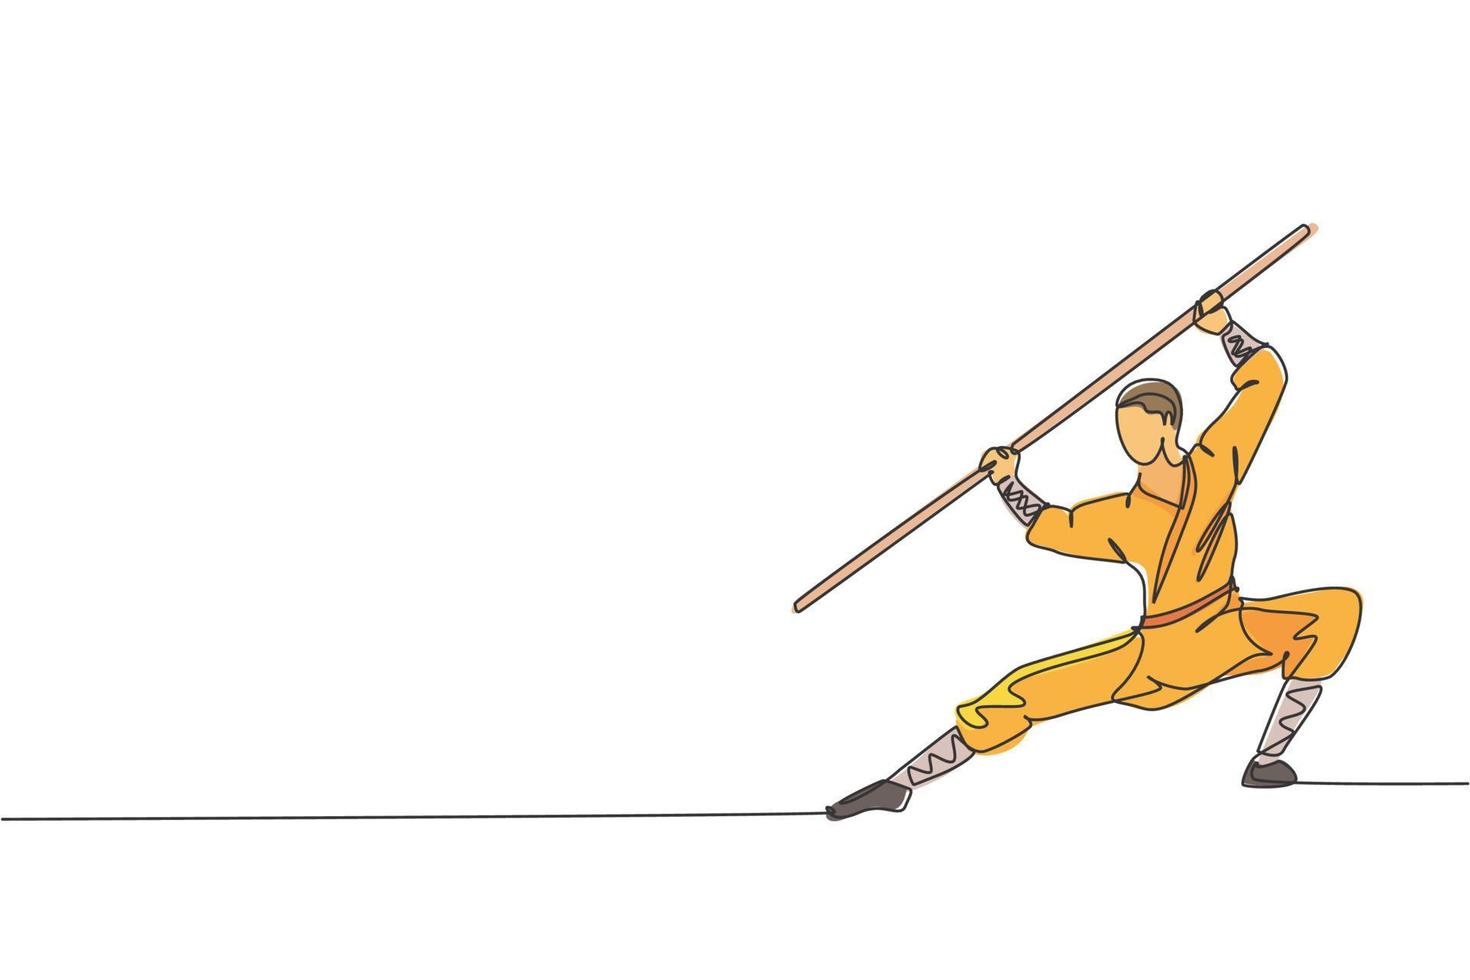 uma linha contínua desenhando jovem monge shaolin pratica kung fu usando bastão longo no chão do templo. conceito de esporte combativo chinês tradicional. ilustração em vetor gráfico de desenho de linha única